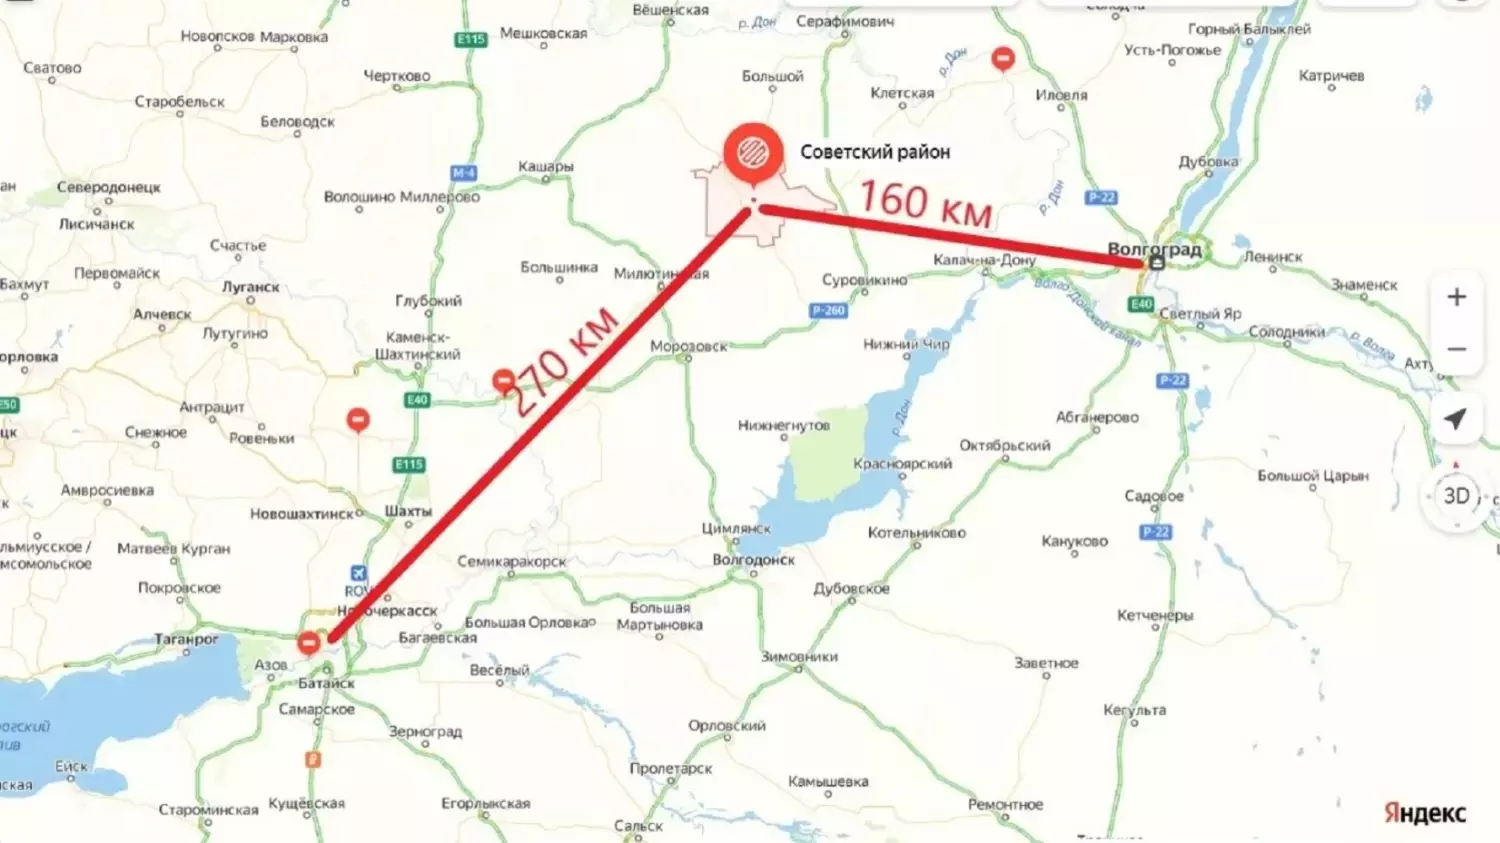 Расстояние от райцентра до Волгограда составляет 160 километров